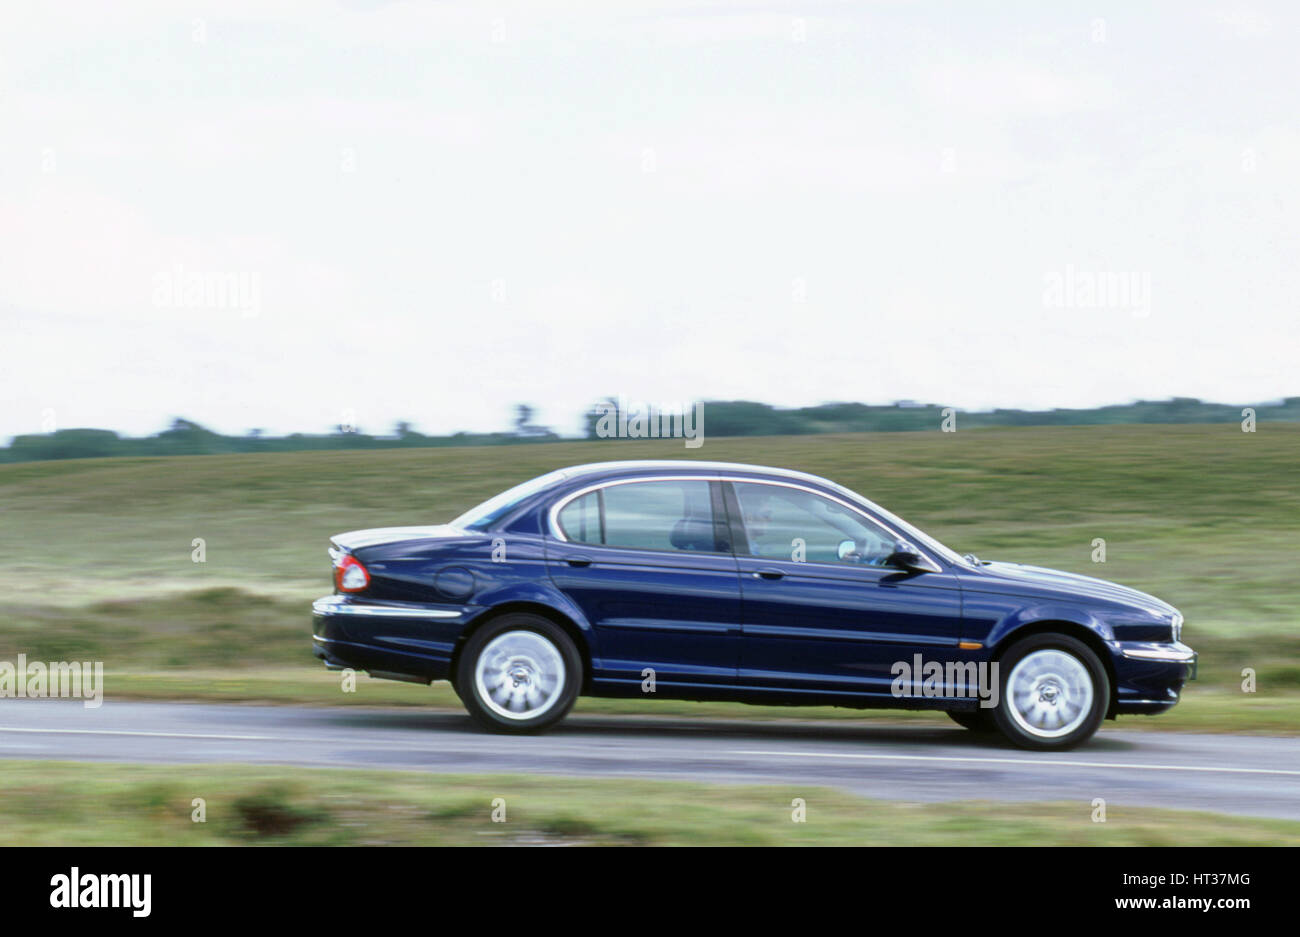 2001 Jaguar X type 2.5. Artiste : Inconnu. Banque D'Images